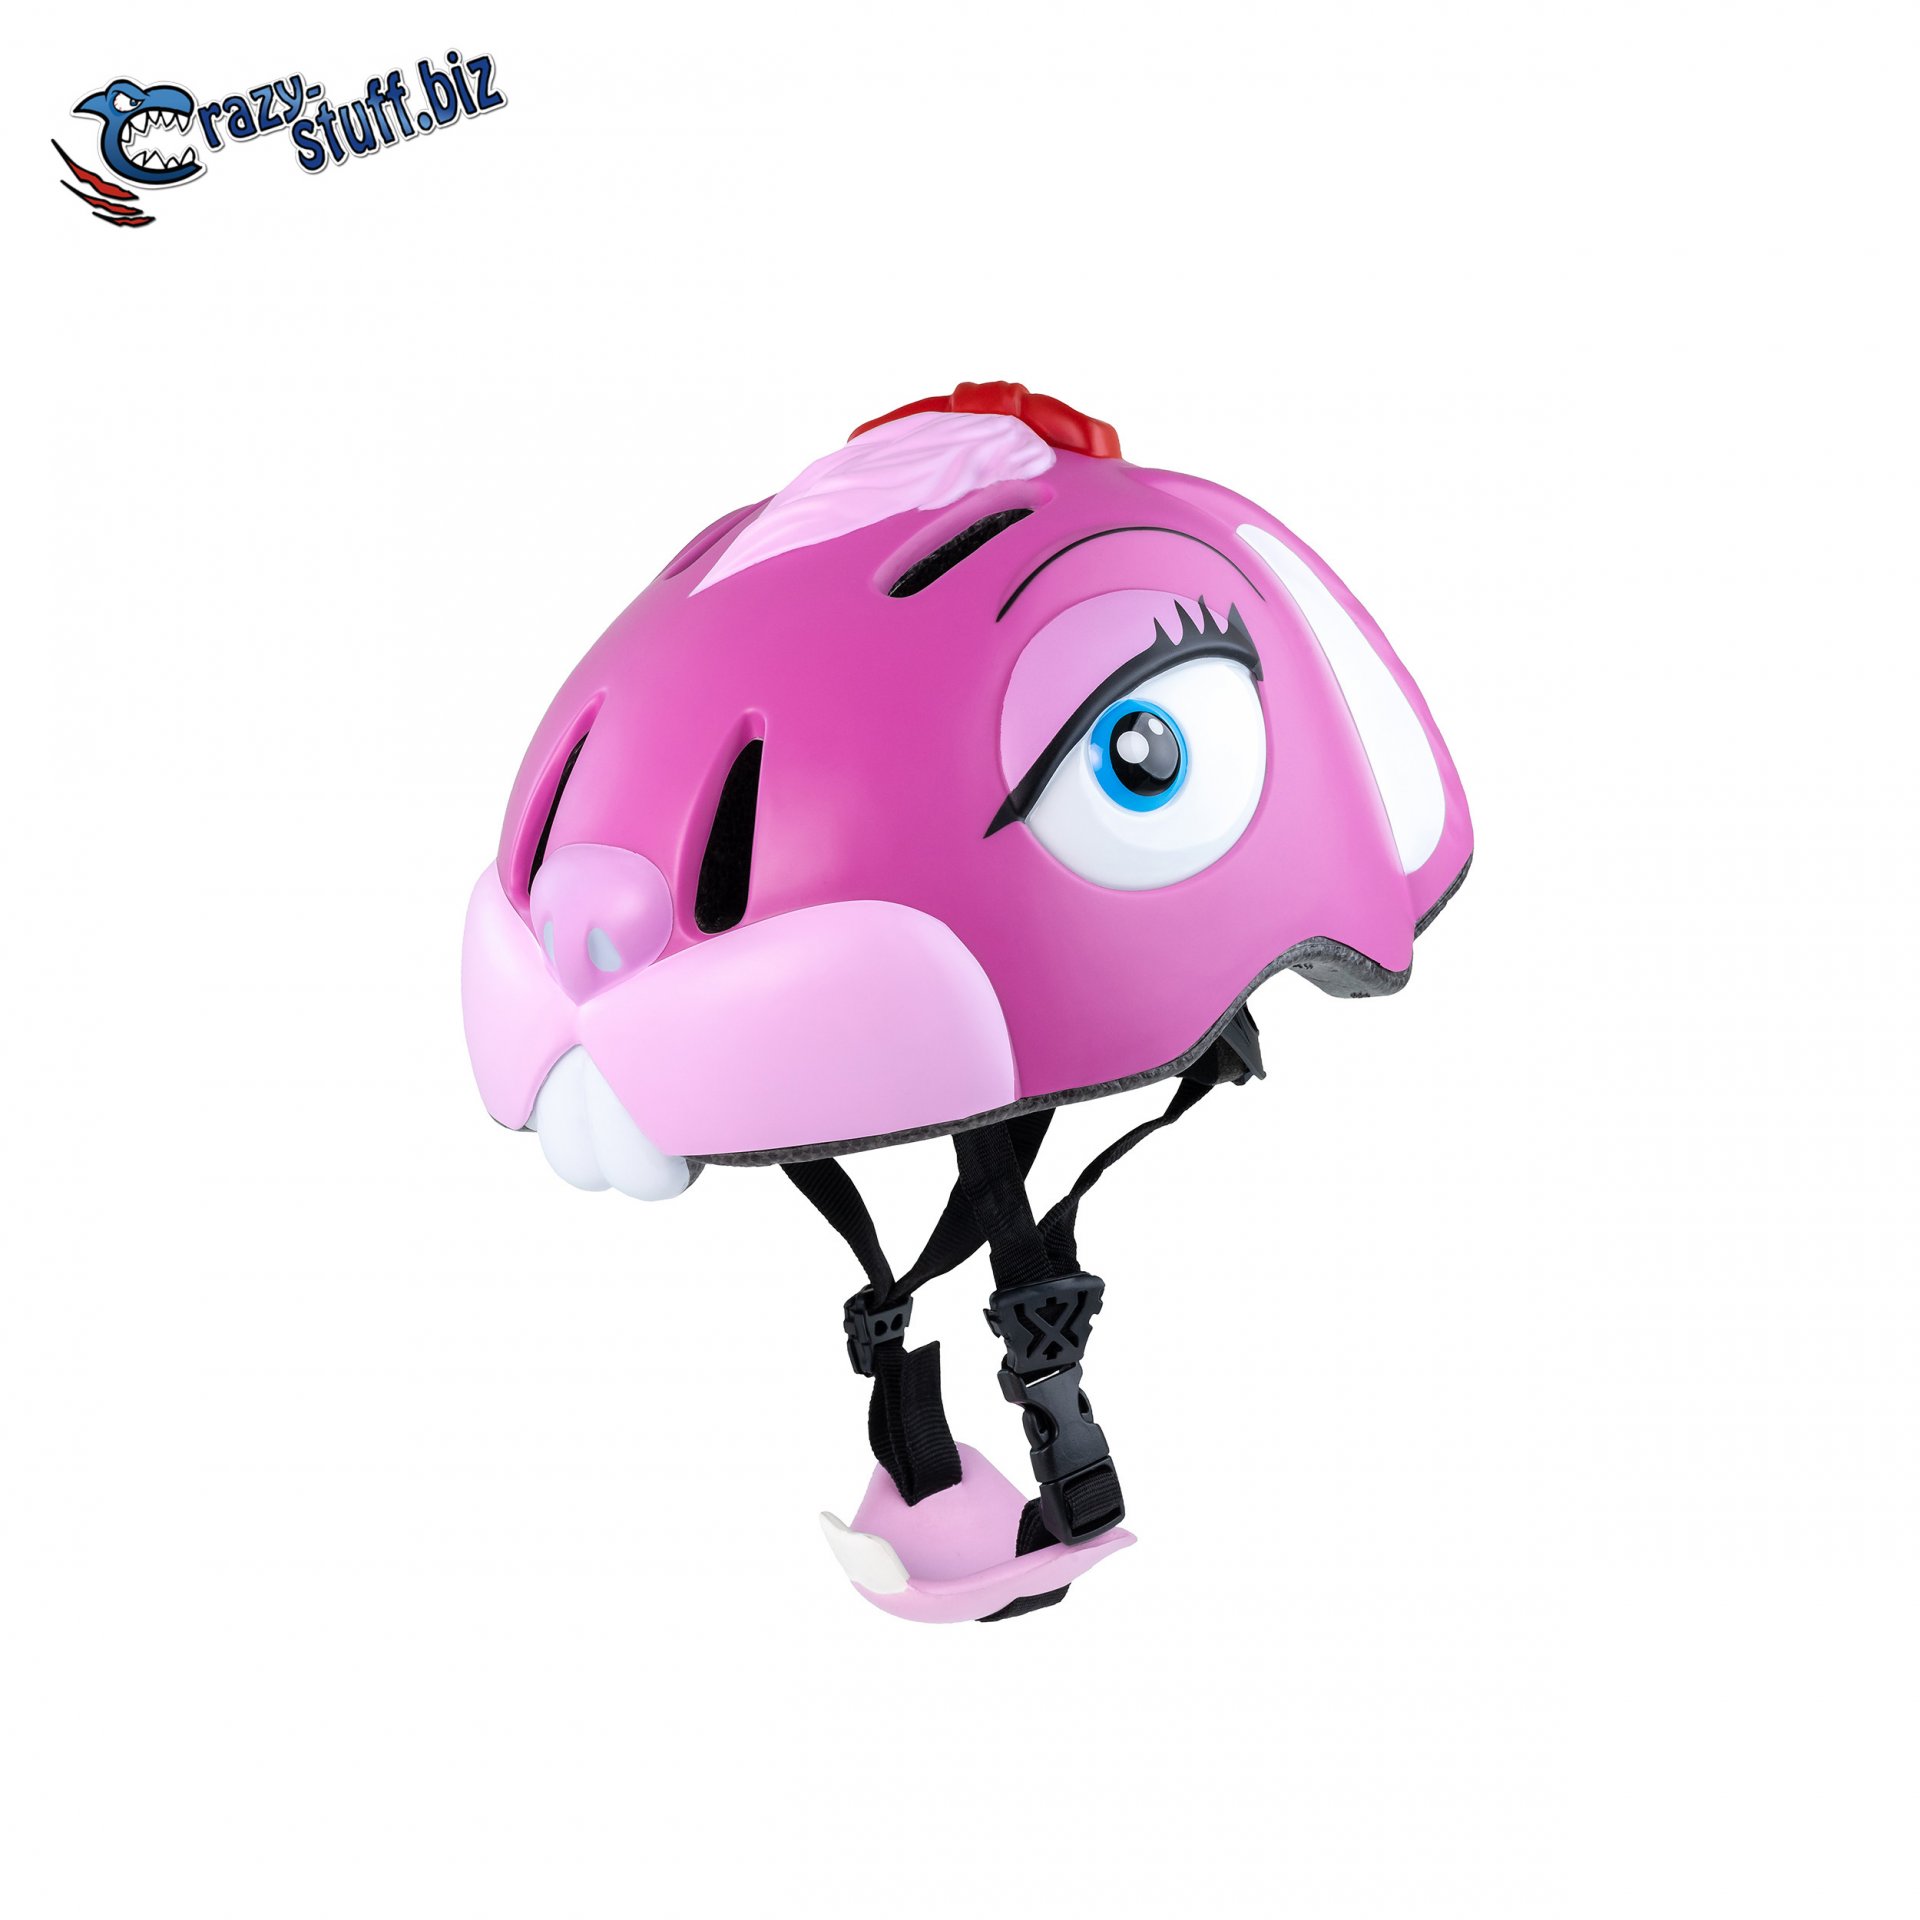 หมวกกันน็อคจักรยานสำหรับเด็ก Crazy Stuff ลายกระต่ายชมพู Pink Bunny (Size S 49-55cm)